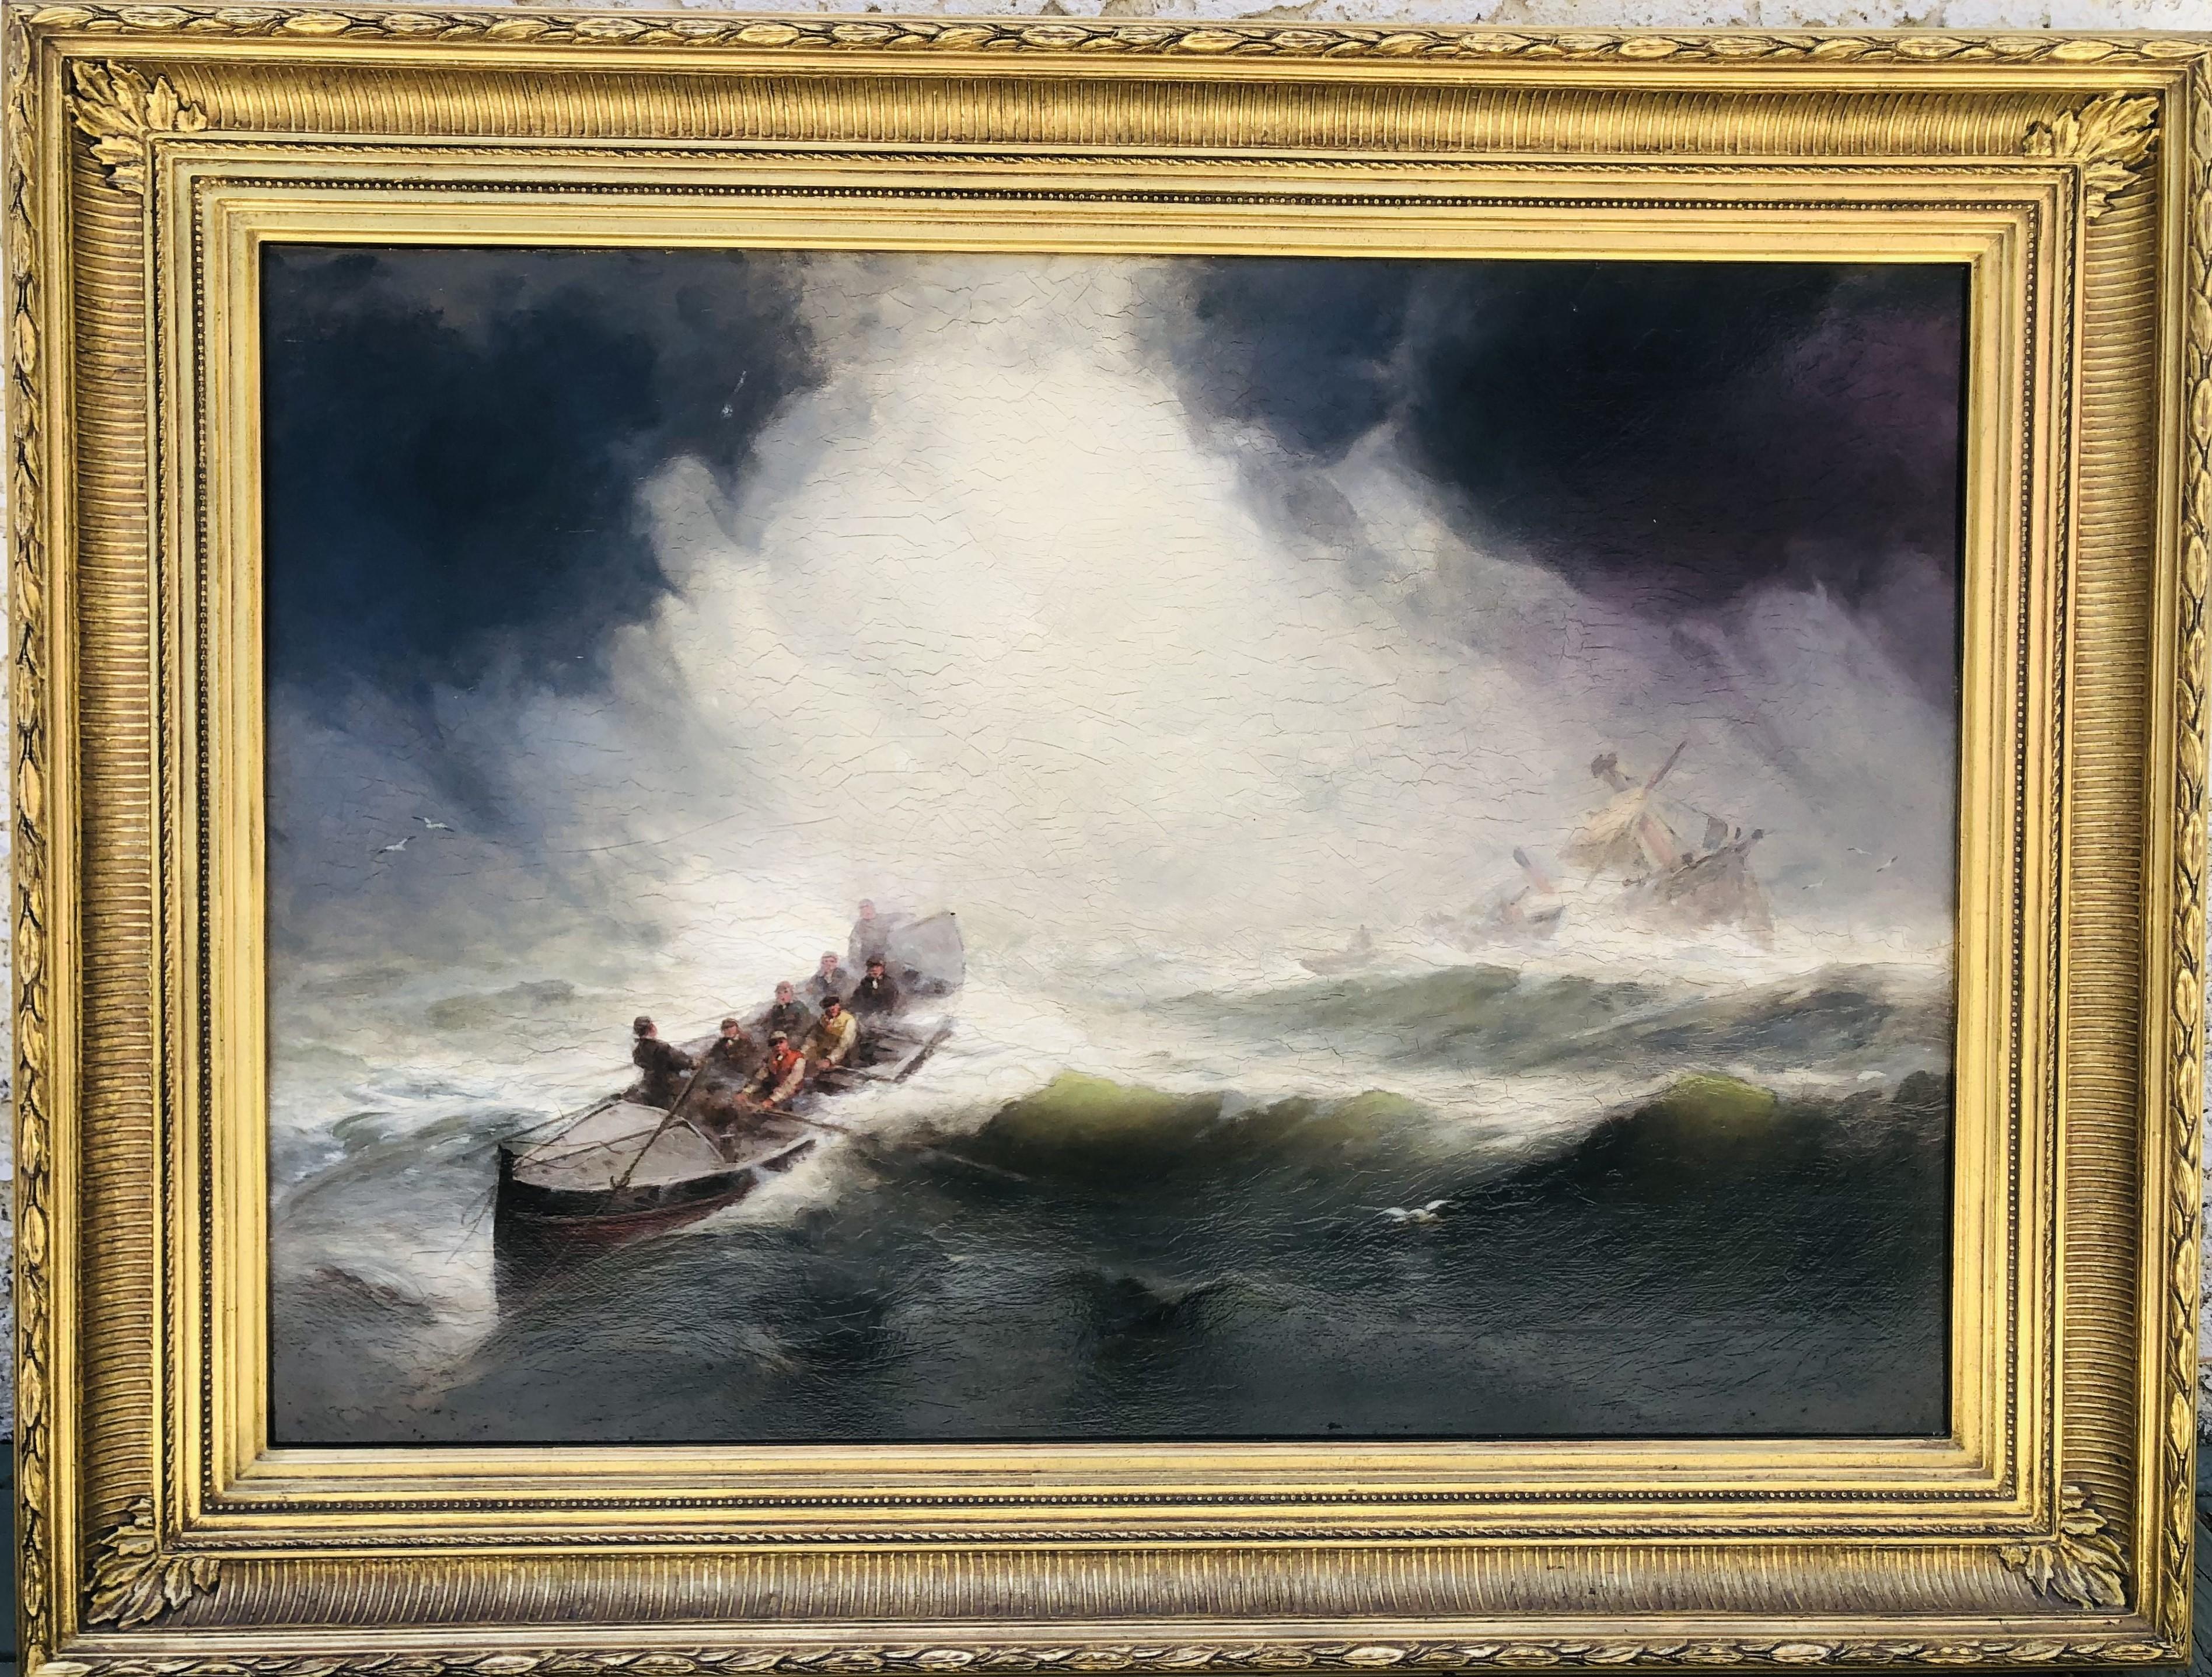 Figurative Painting George Washington Nicholson - Surfmen Rescuing Foundering Ship du 19ème siècle, GW Nicholson